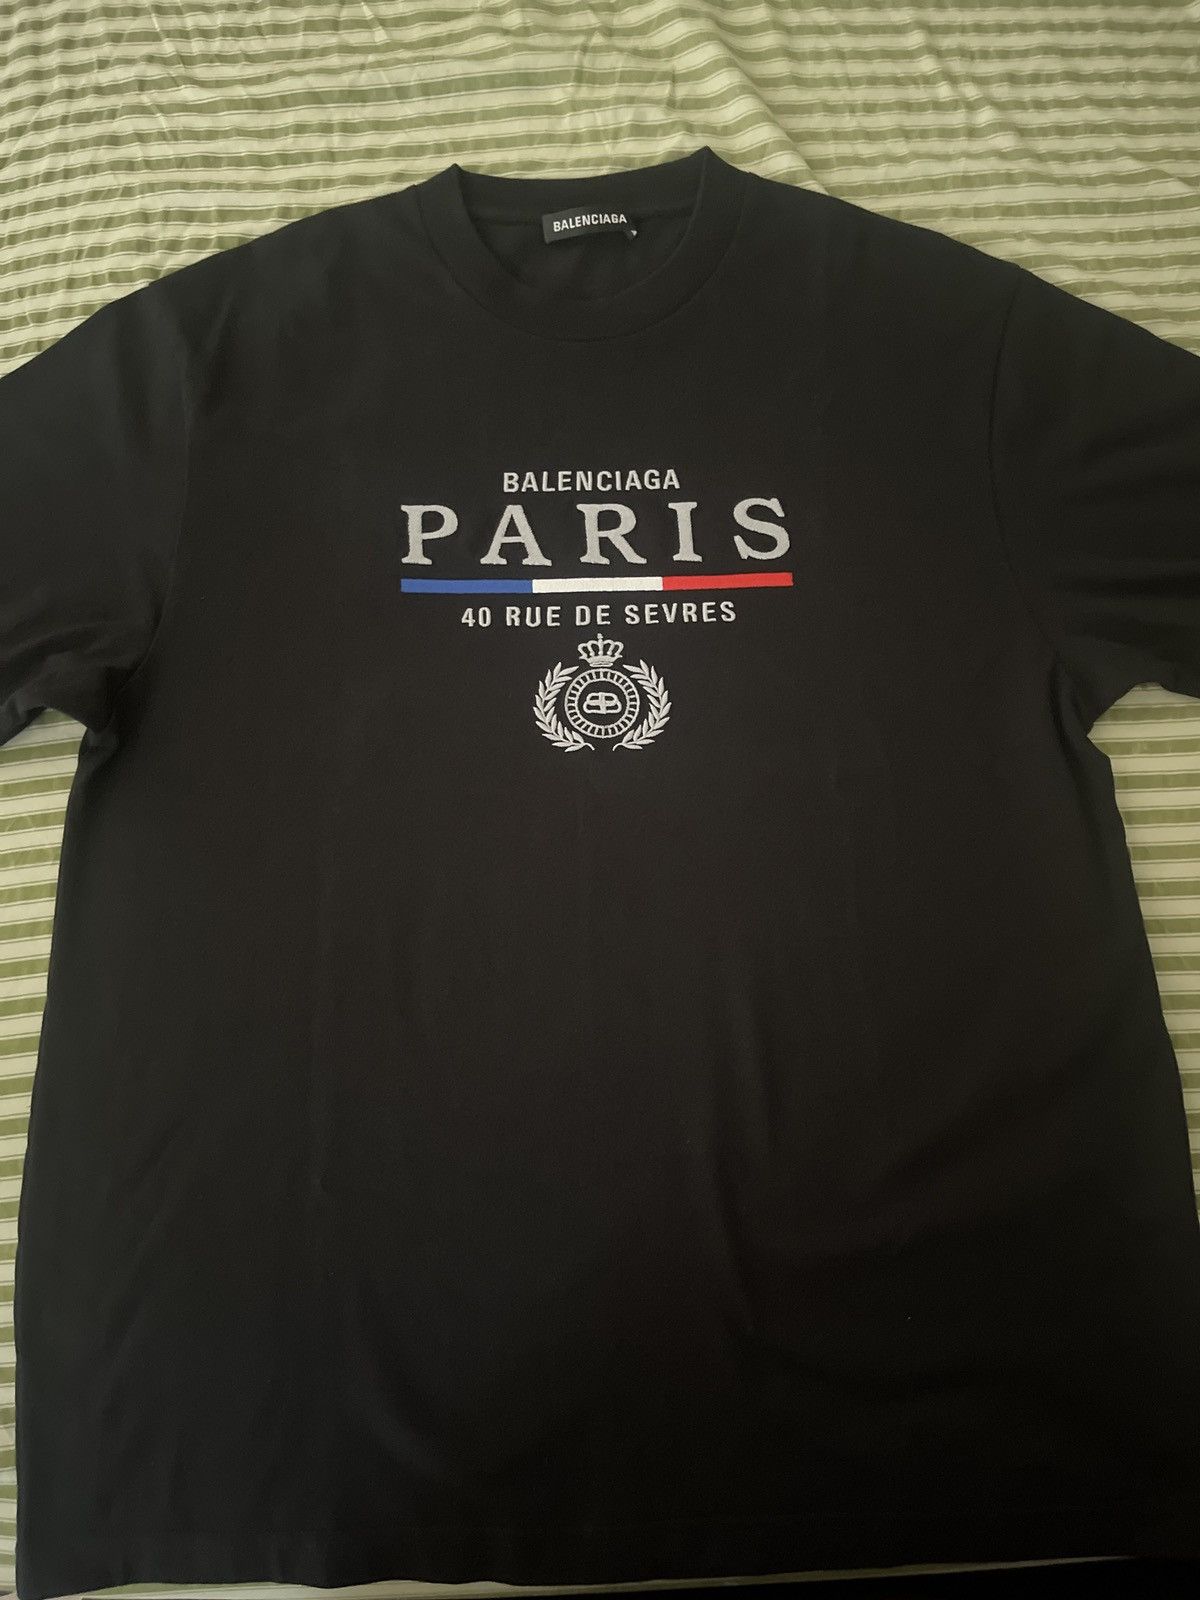 Balenciaga Balenciaga Paris T-shirt | Grailed